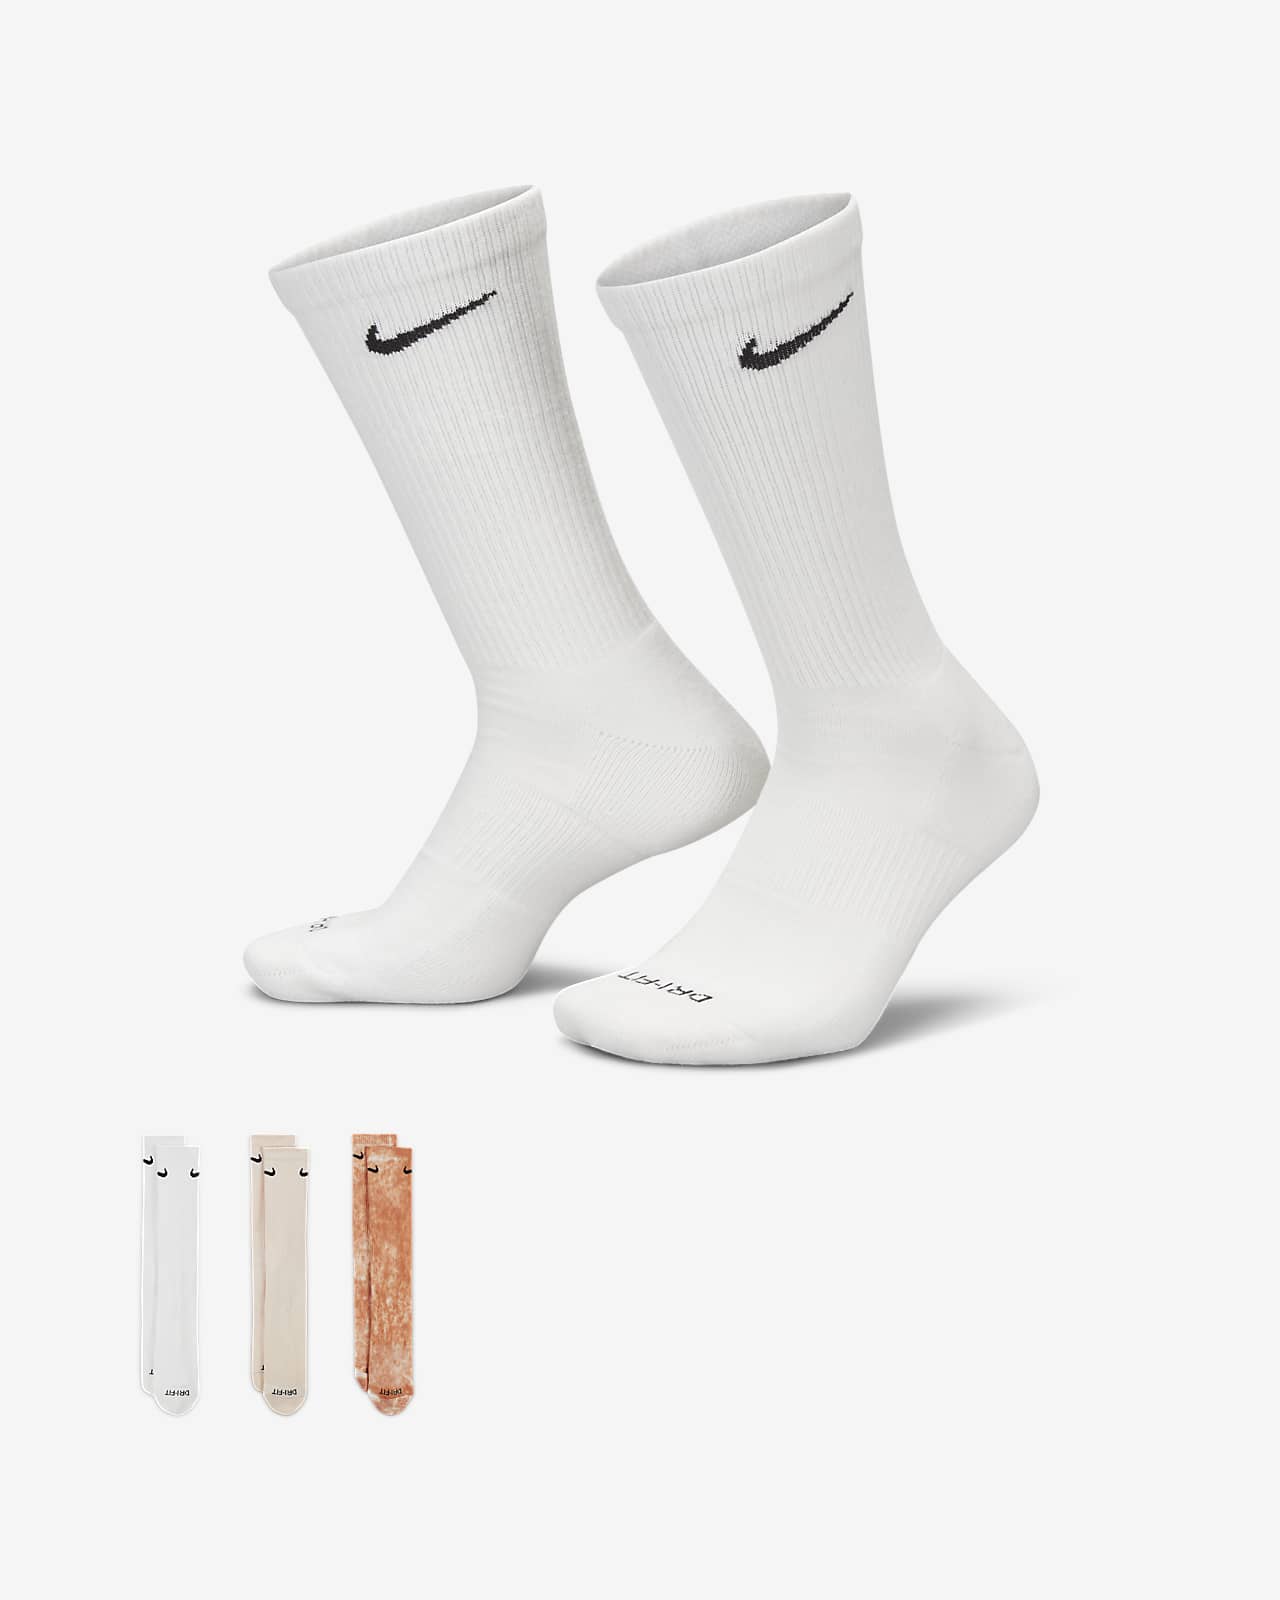 Merchandiser Illusie Roman Nike Everyday Plus Cushioned Crew sokken (3 paar). Nike NL